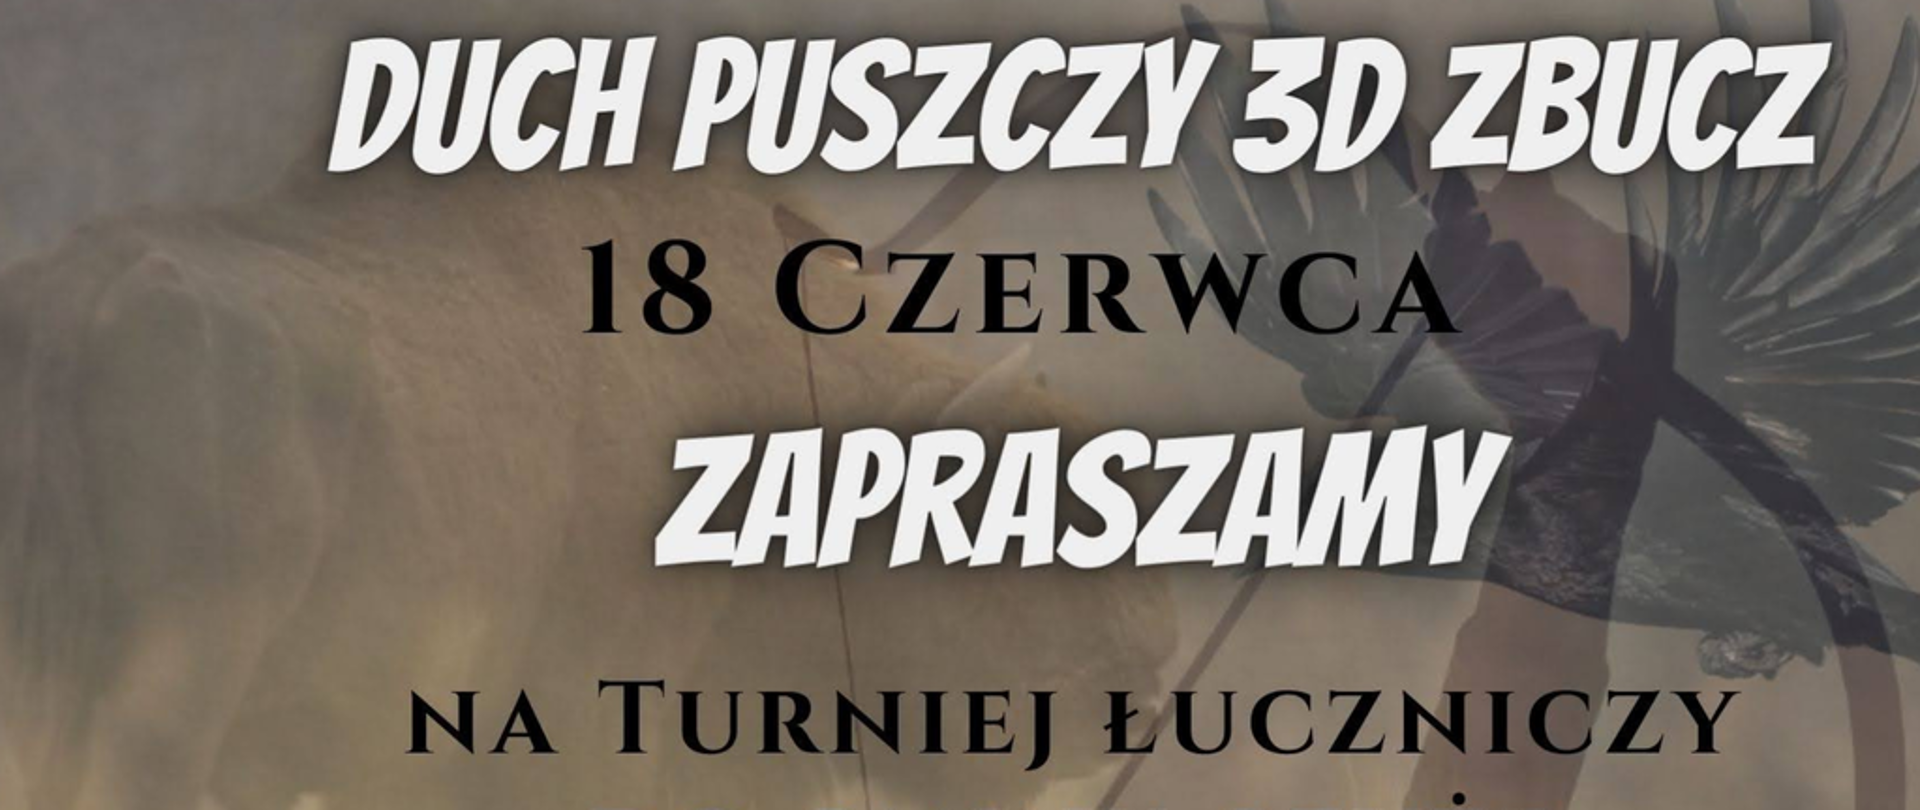 Duch Puszczy 3D Zbucz 18 czerwca zapraszamy na Turniej Łuczniczy do gminy Czyże. Dni otwarte 16.06.2023